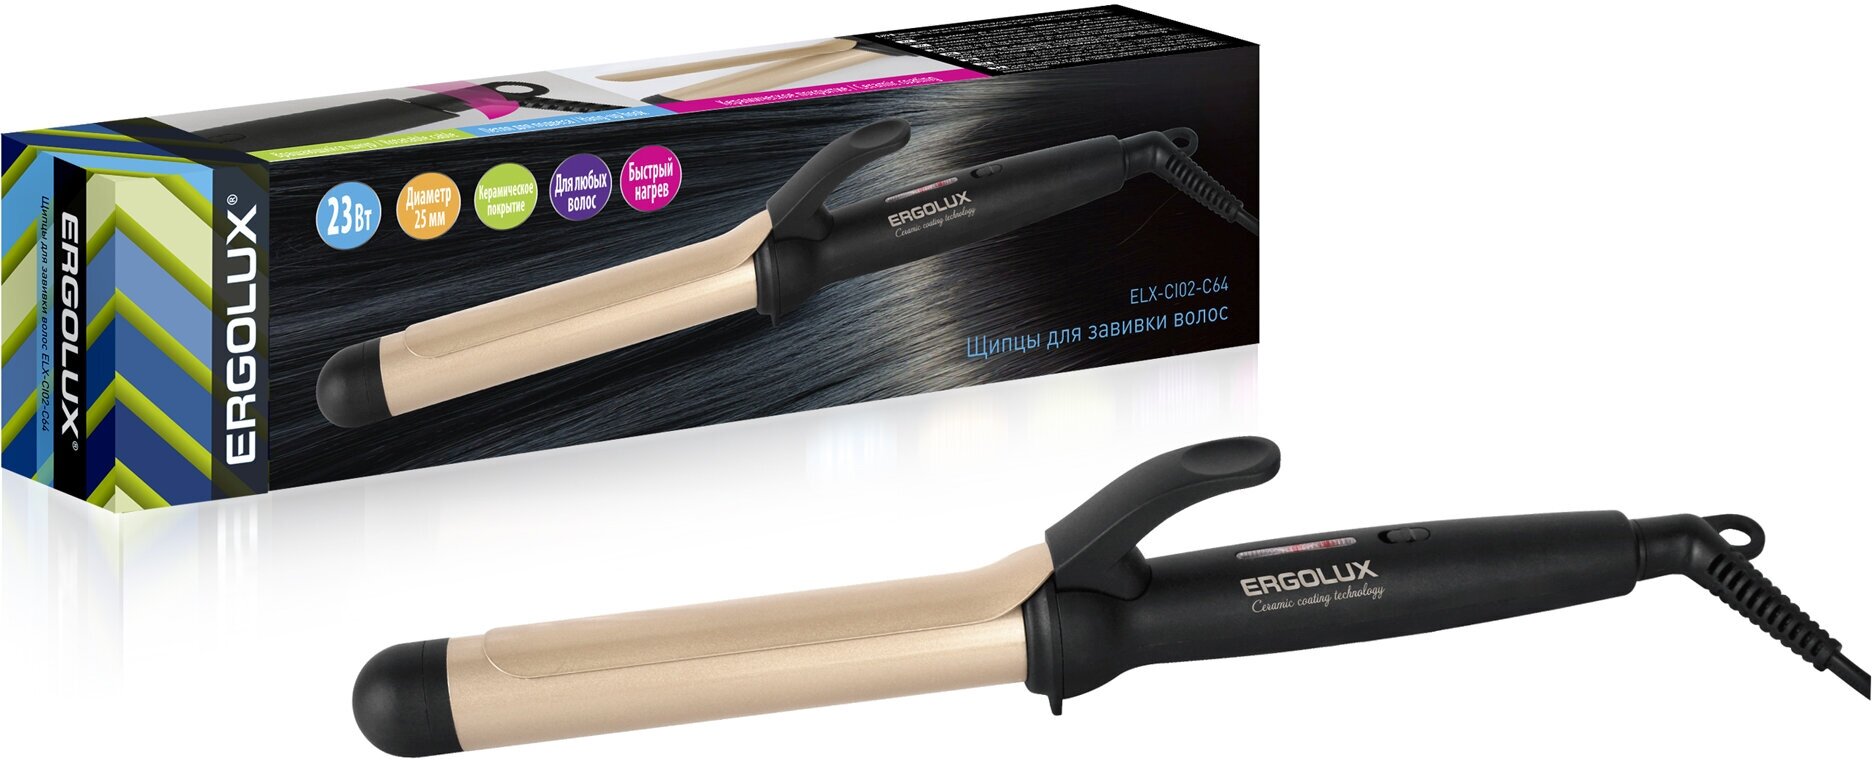 Щипцы для завивки волос ERGOLUX ELX-CI02-C64 черный/золото,25 мм, 23Вт